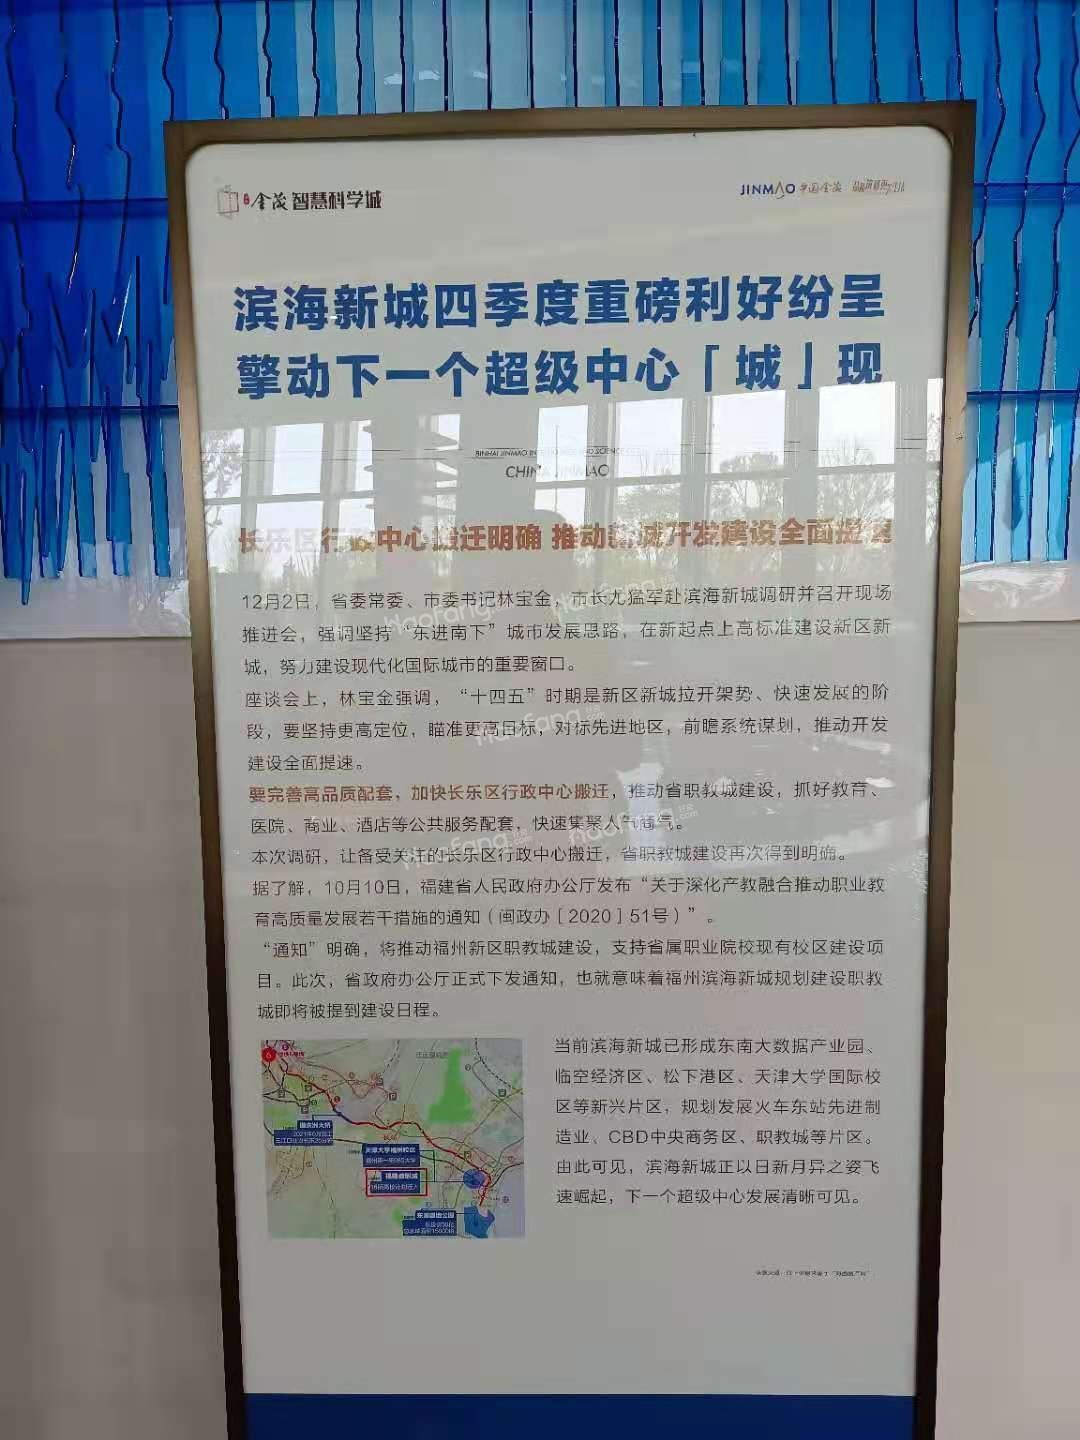 滨海金茂智慧科学城宣传图